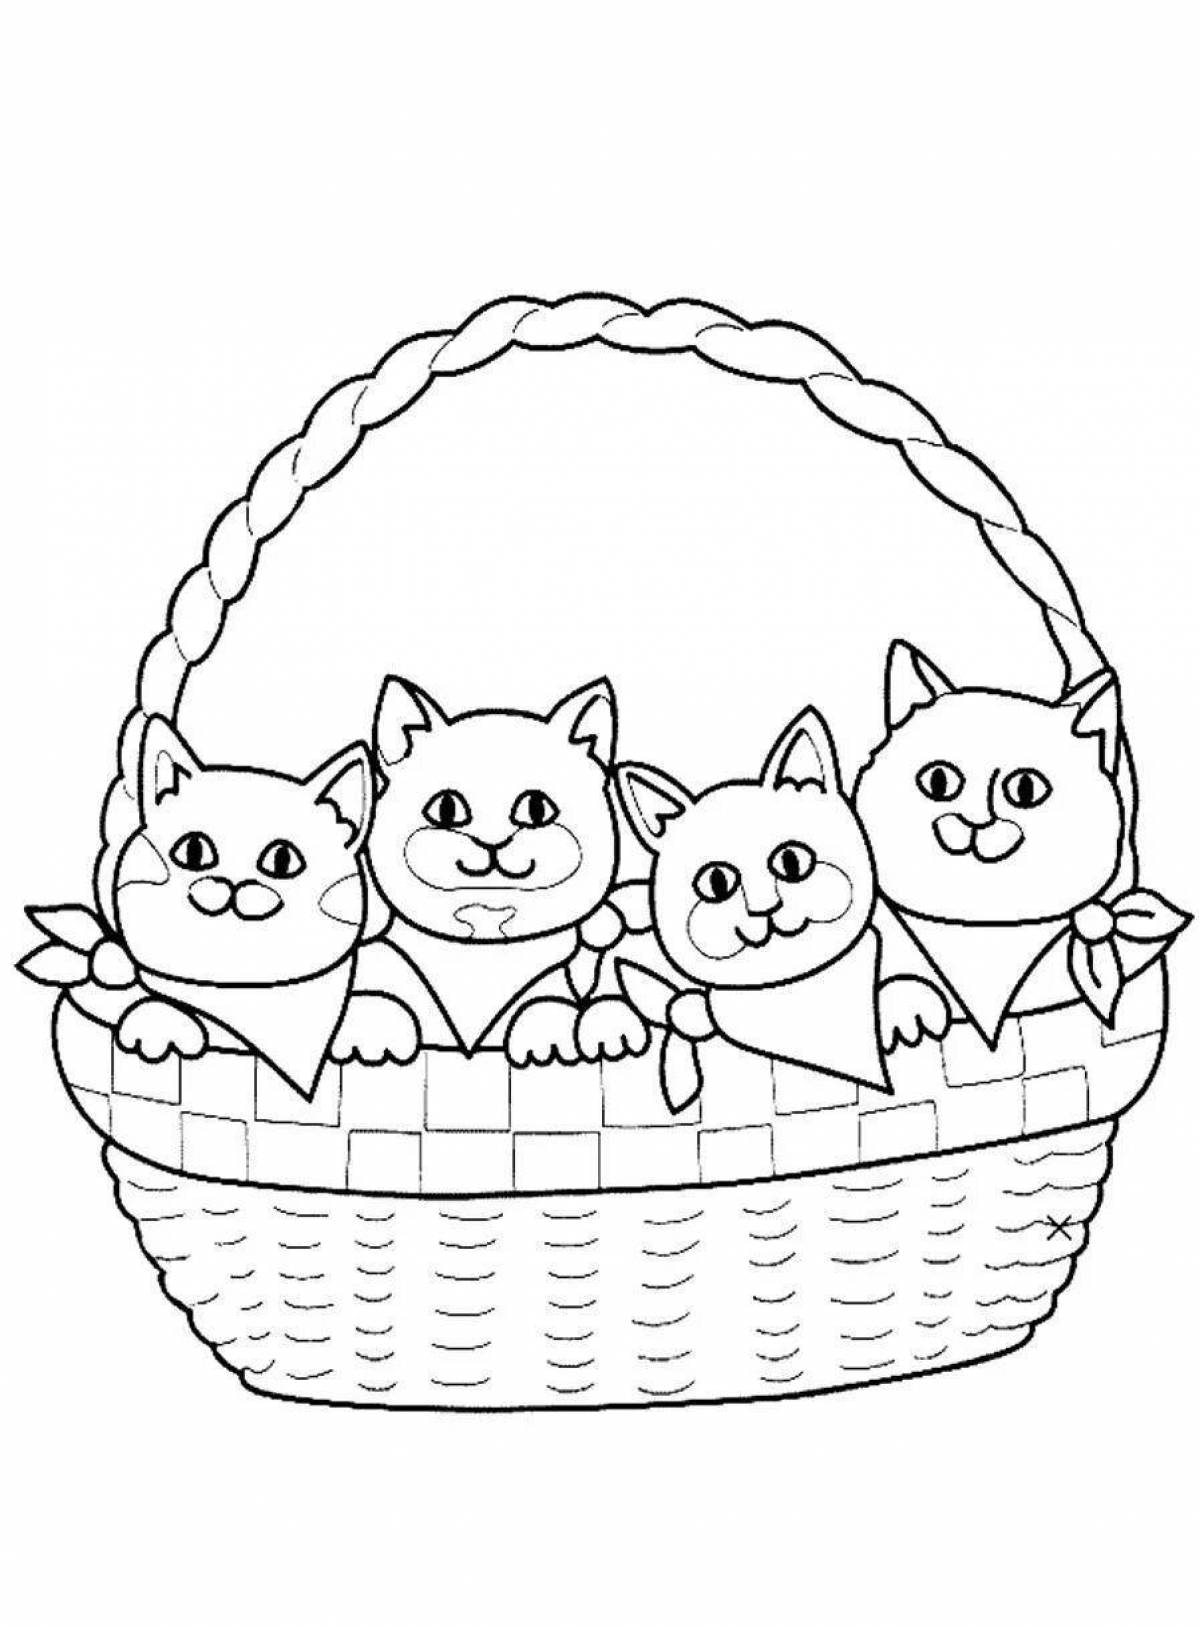 Kittens in a basket #6